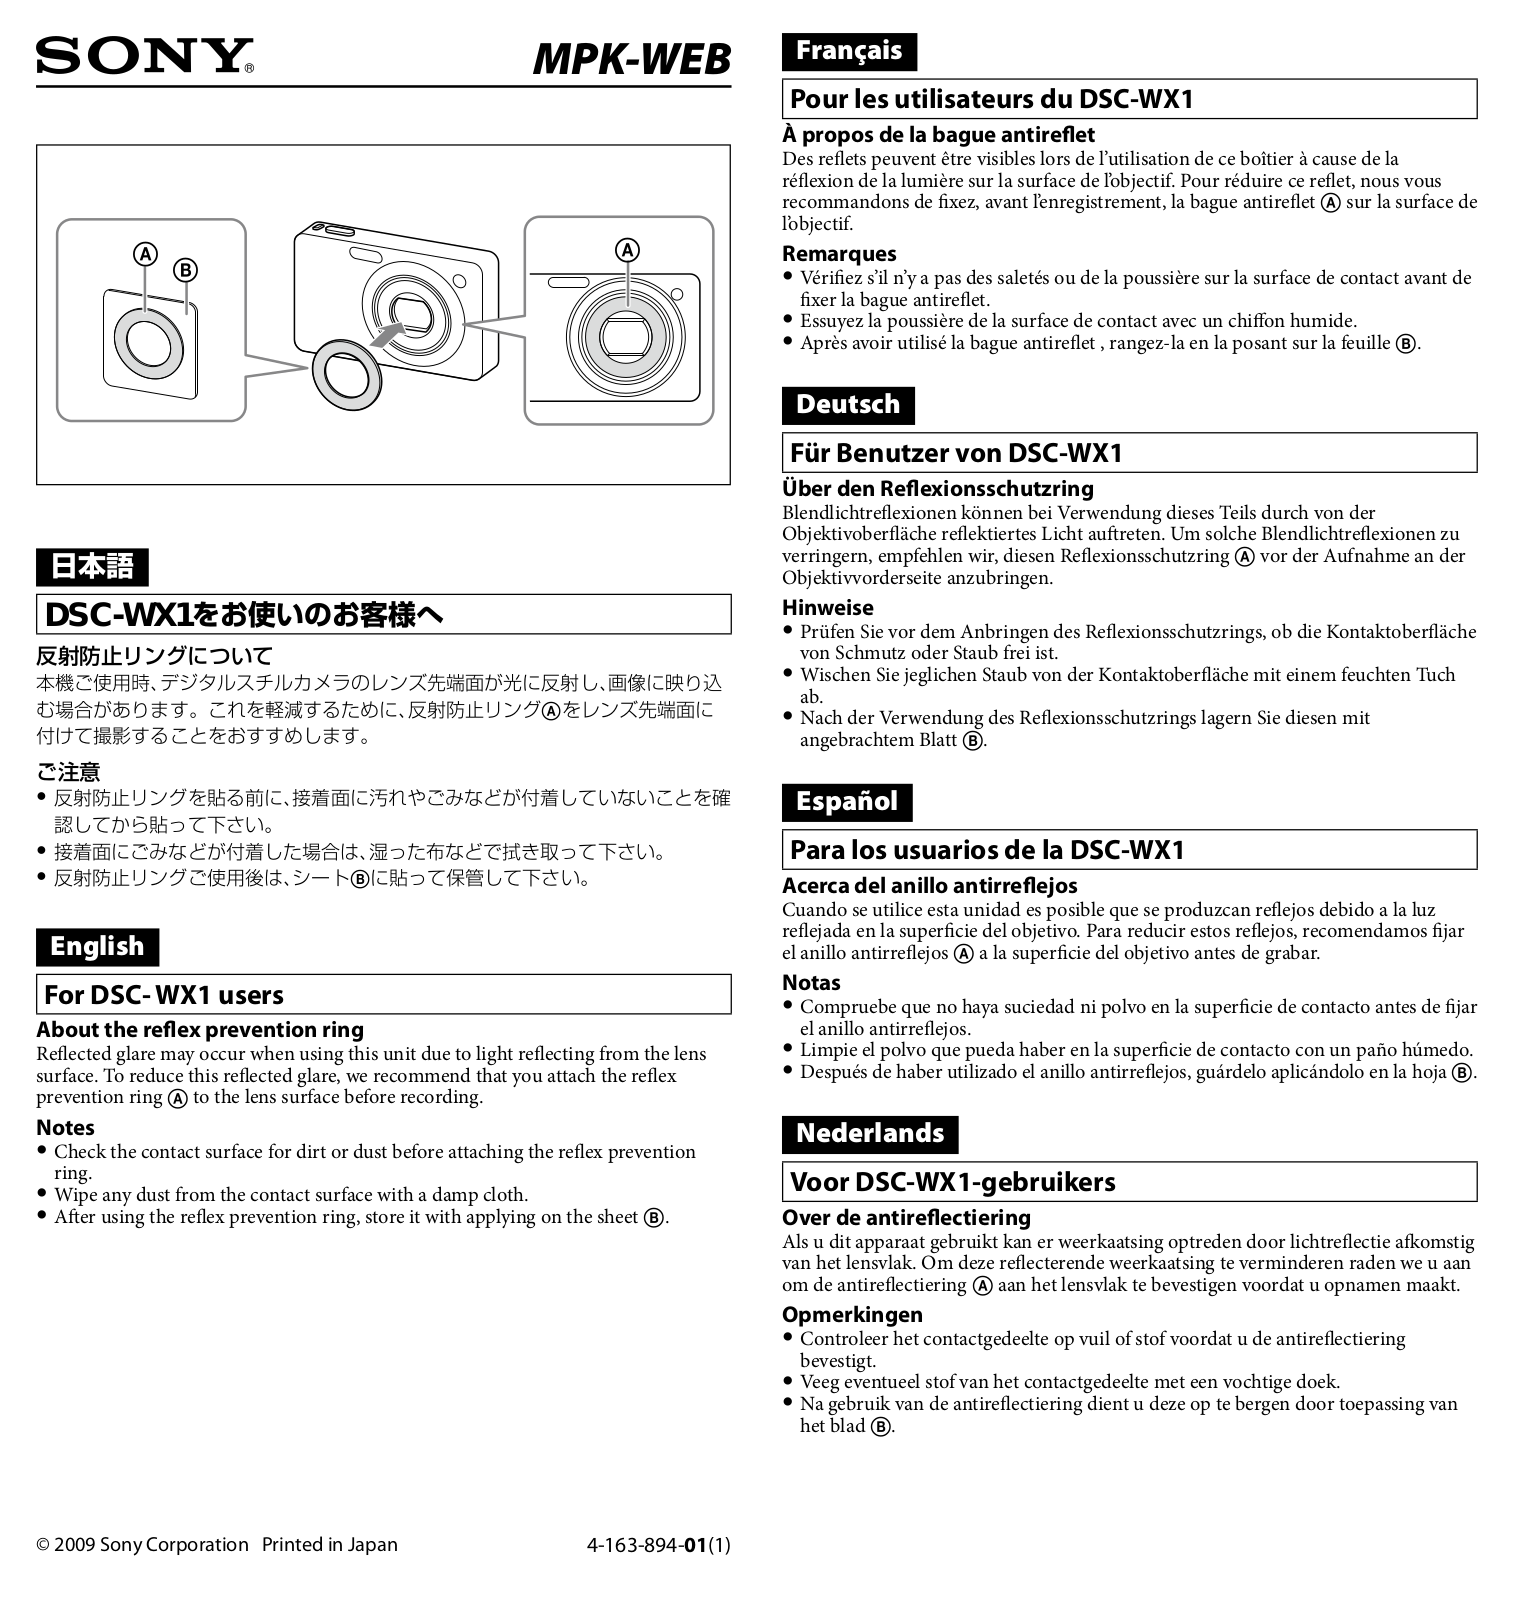 Sony MPK-WEB About